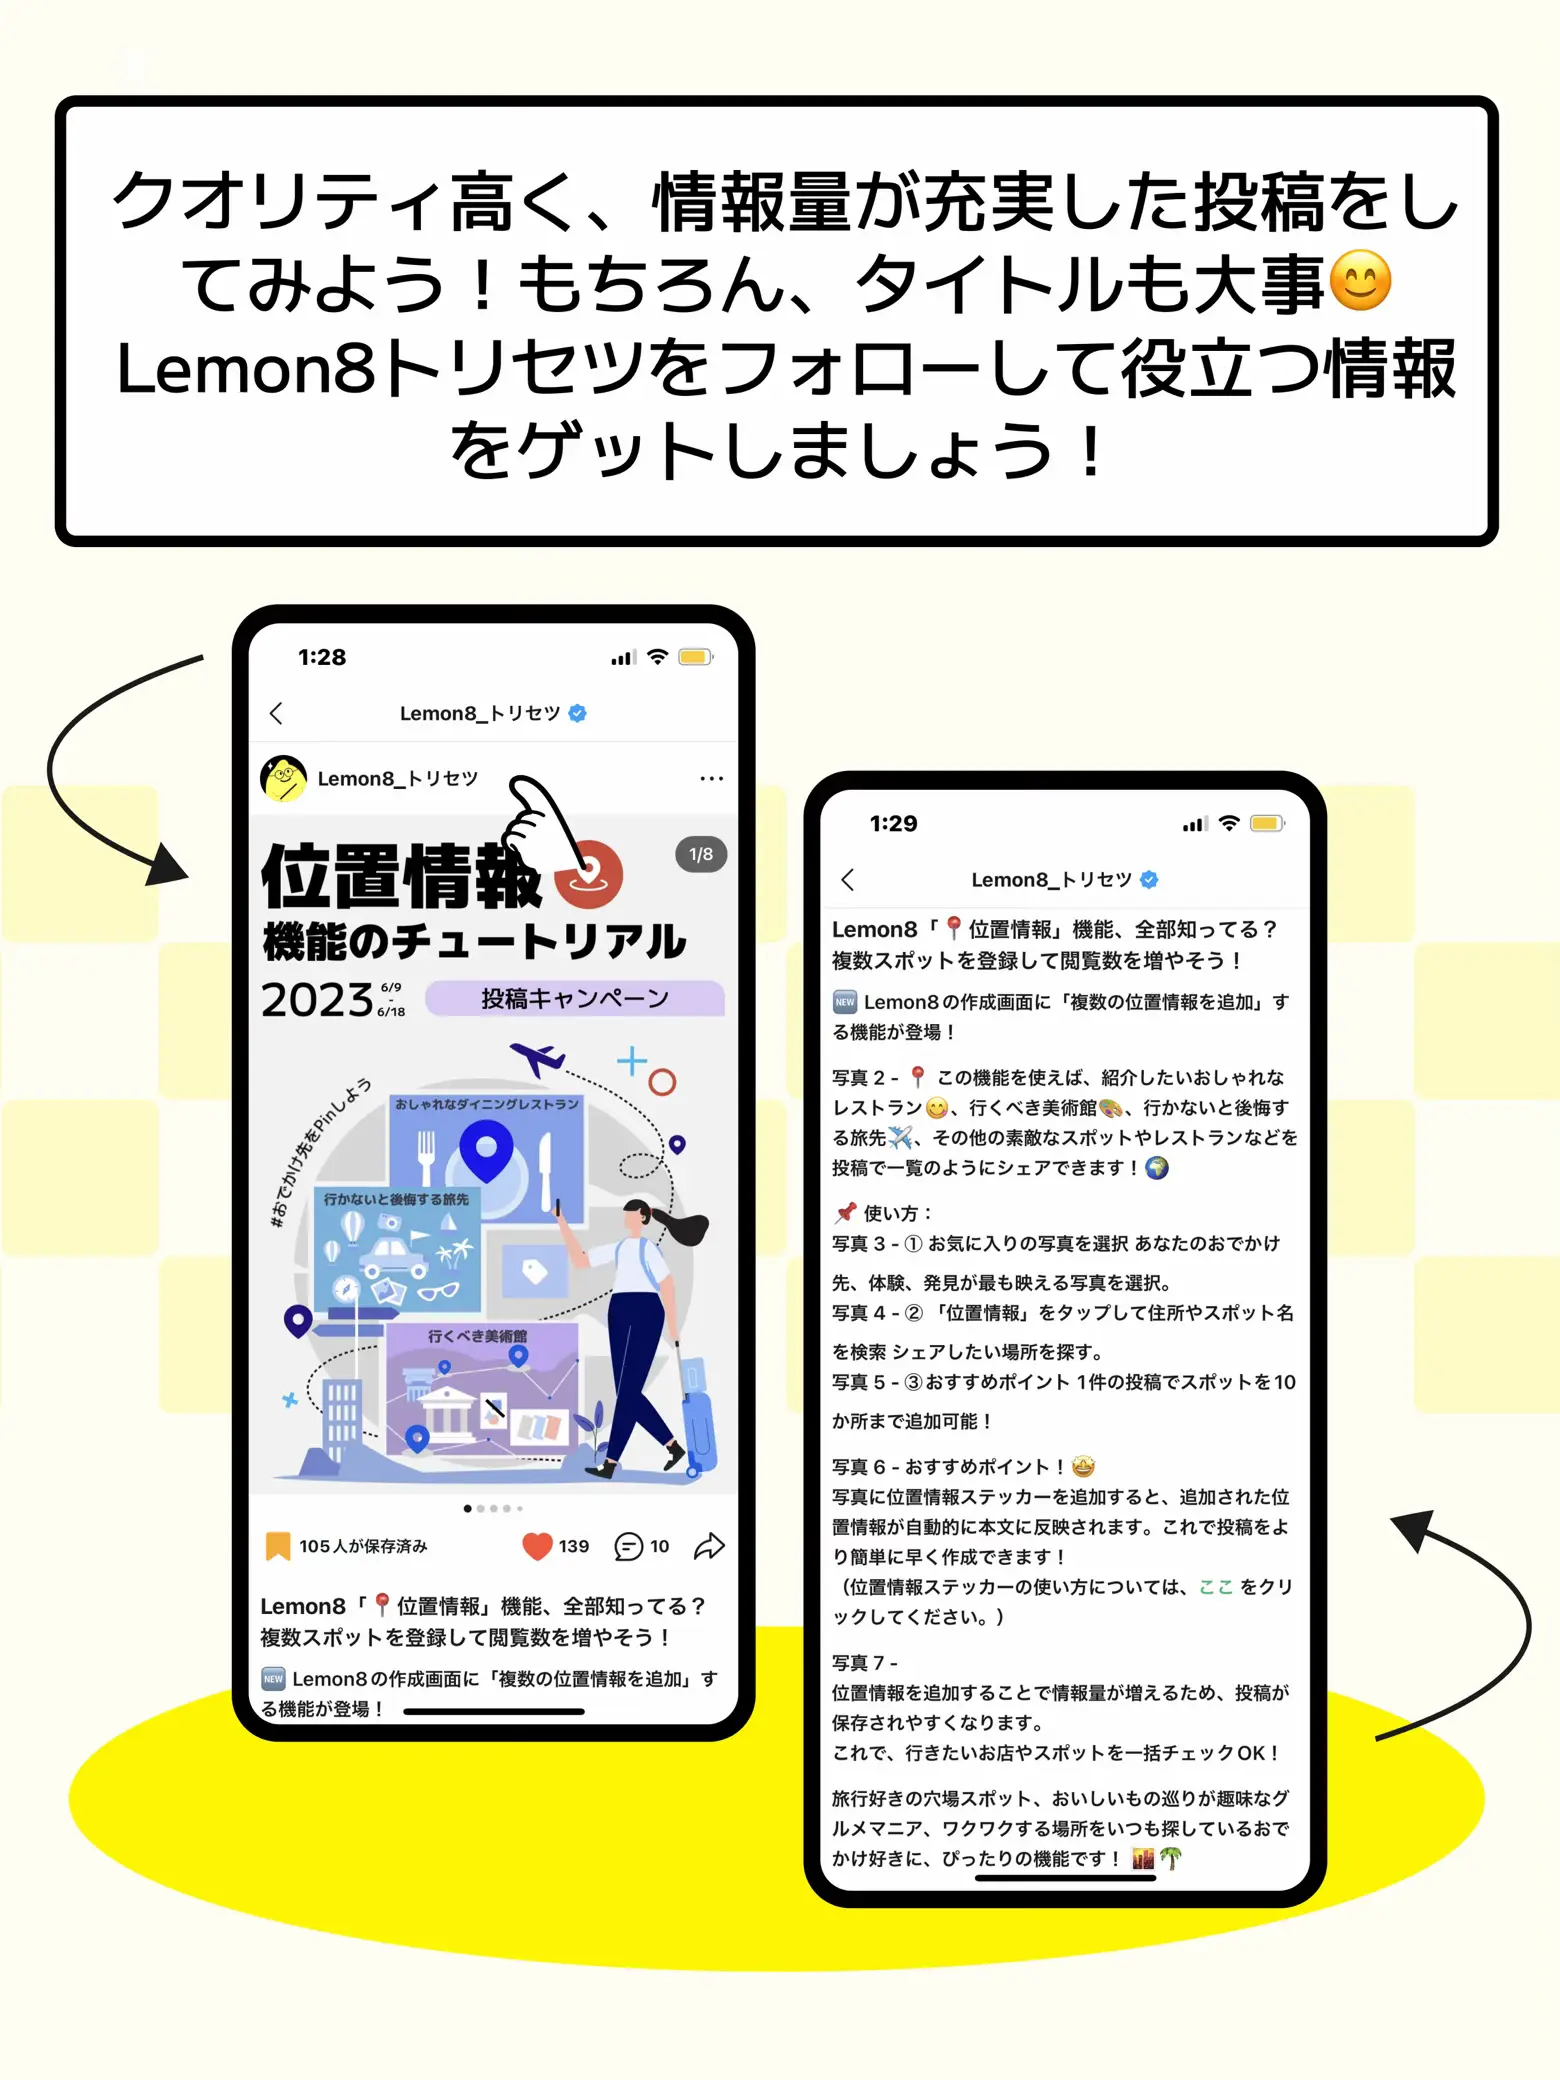 レモンエイトコメント消す方法 - Lemon8検索